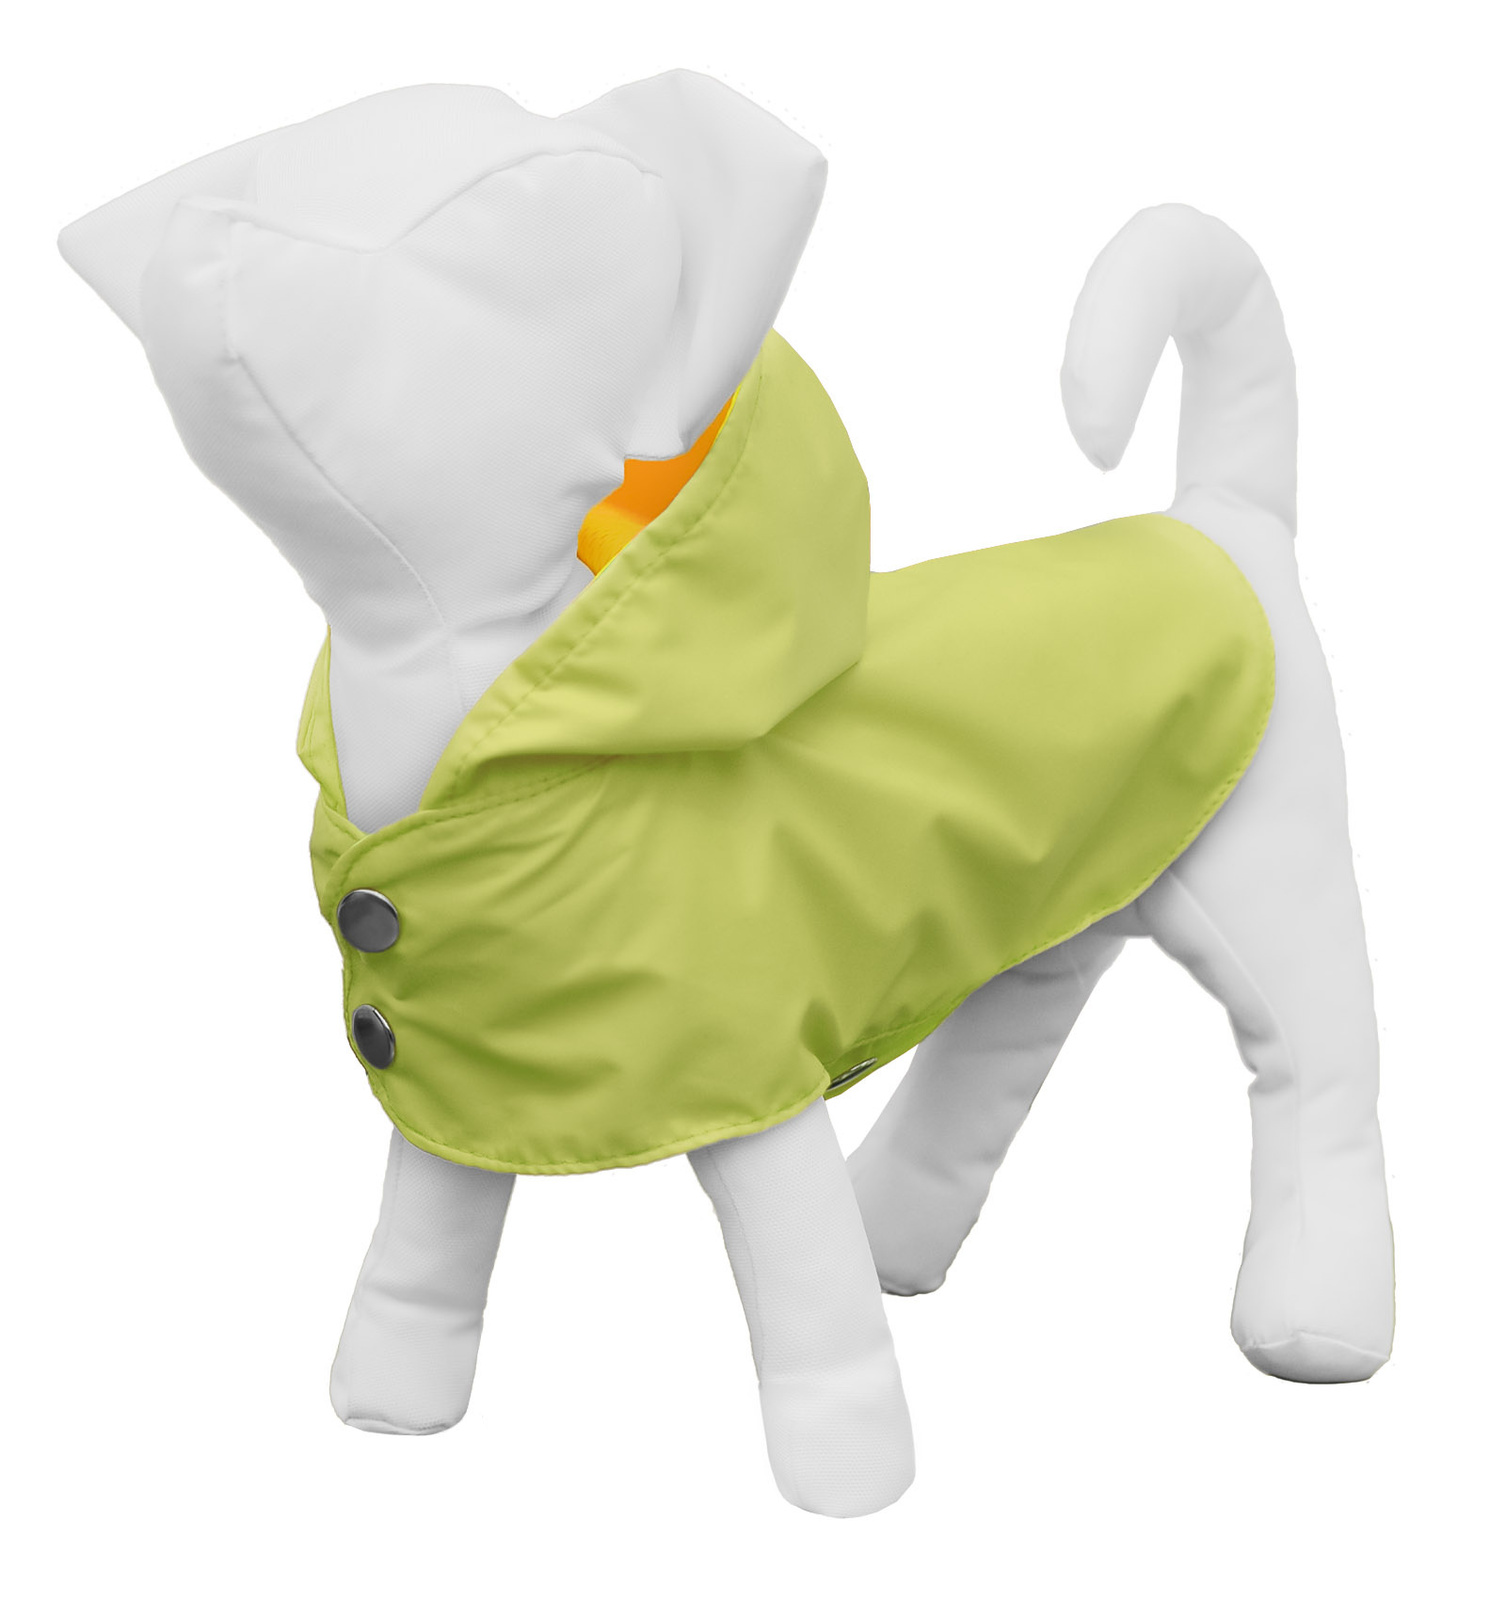 Yami-Yami одежда дождевик-плащ для собак, салатовый (XS) Yami-Yami одежда дождевик-плащ для собак, салатовый (XS) - фото 1